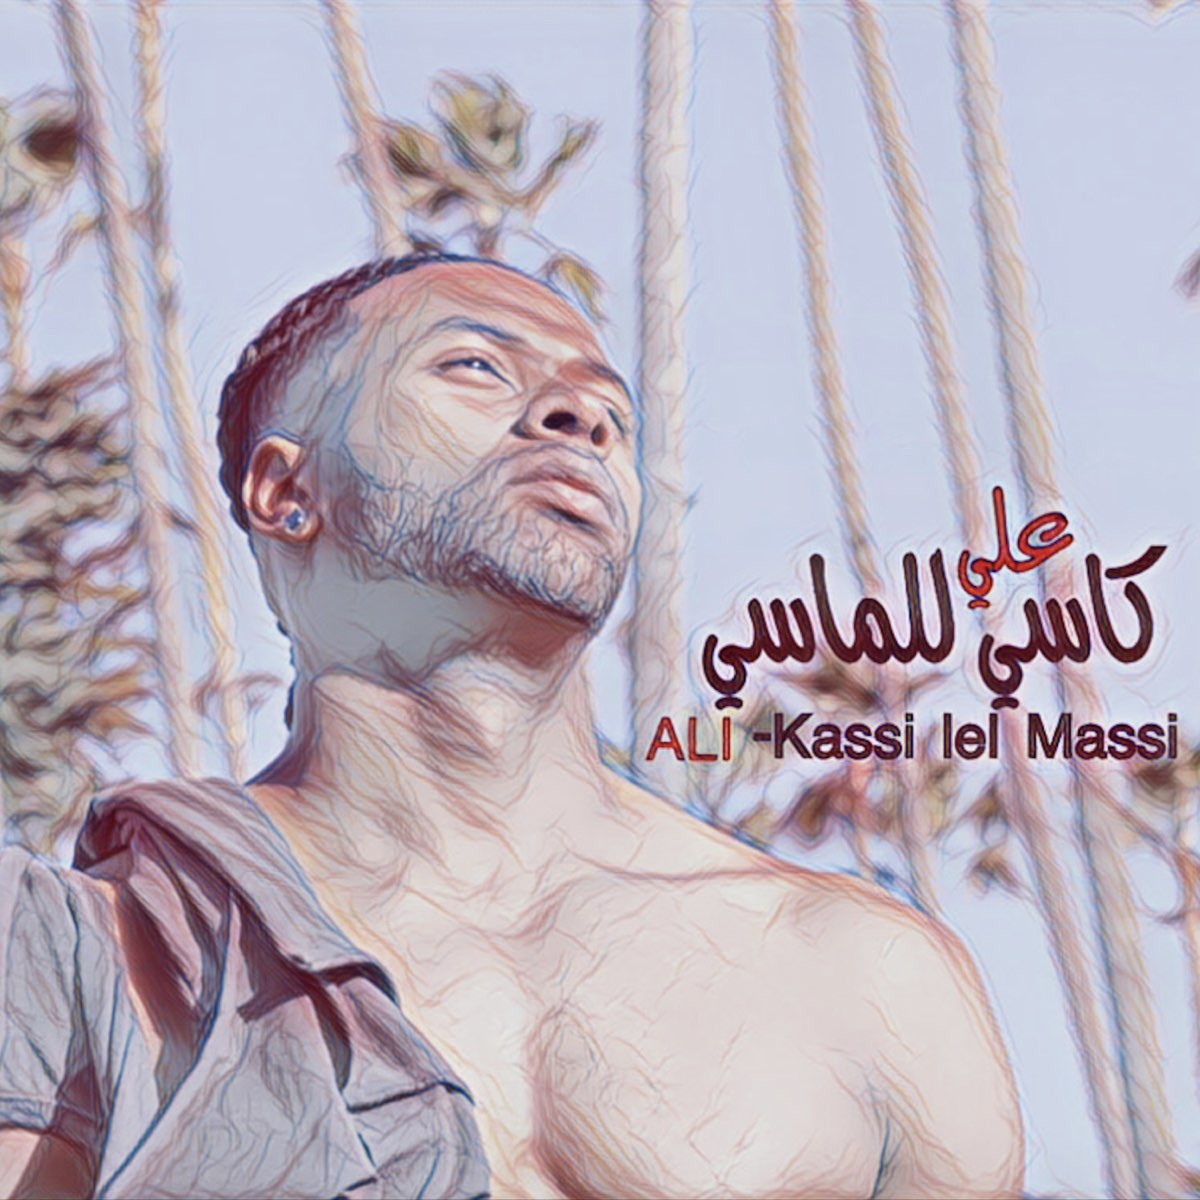 Kassi lel Massi - كاسي للمآسي - Single by ALI' on Apple Music